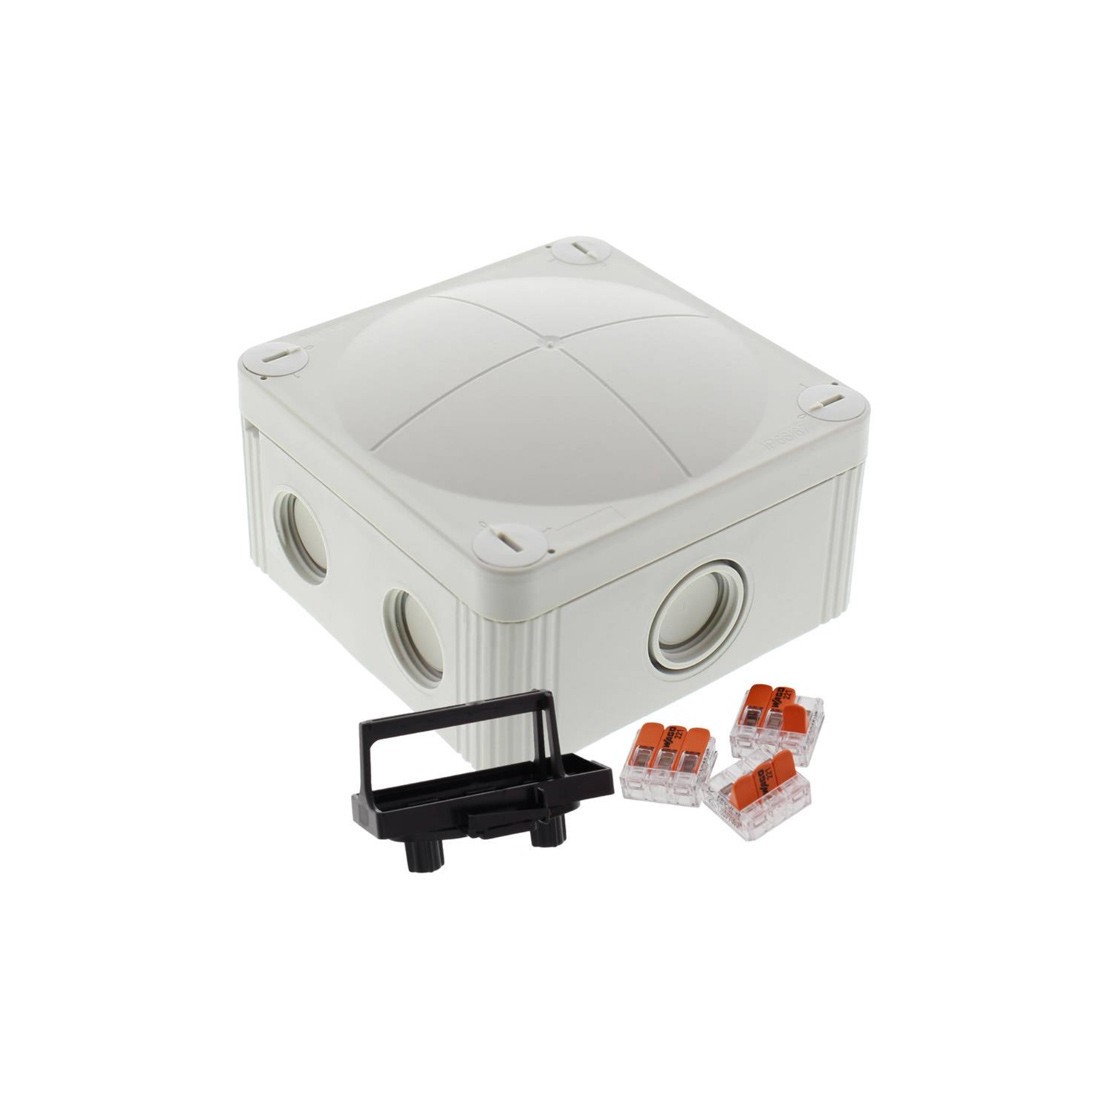 Wago connectors & Glands IP66 Wiska Combi 407 White Weatherproof Junction Box 